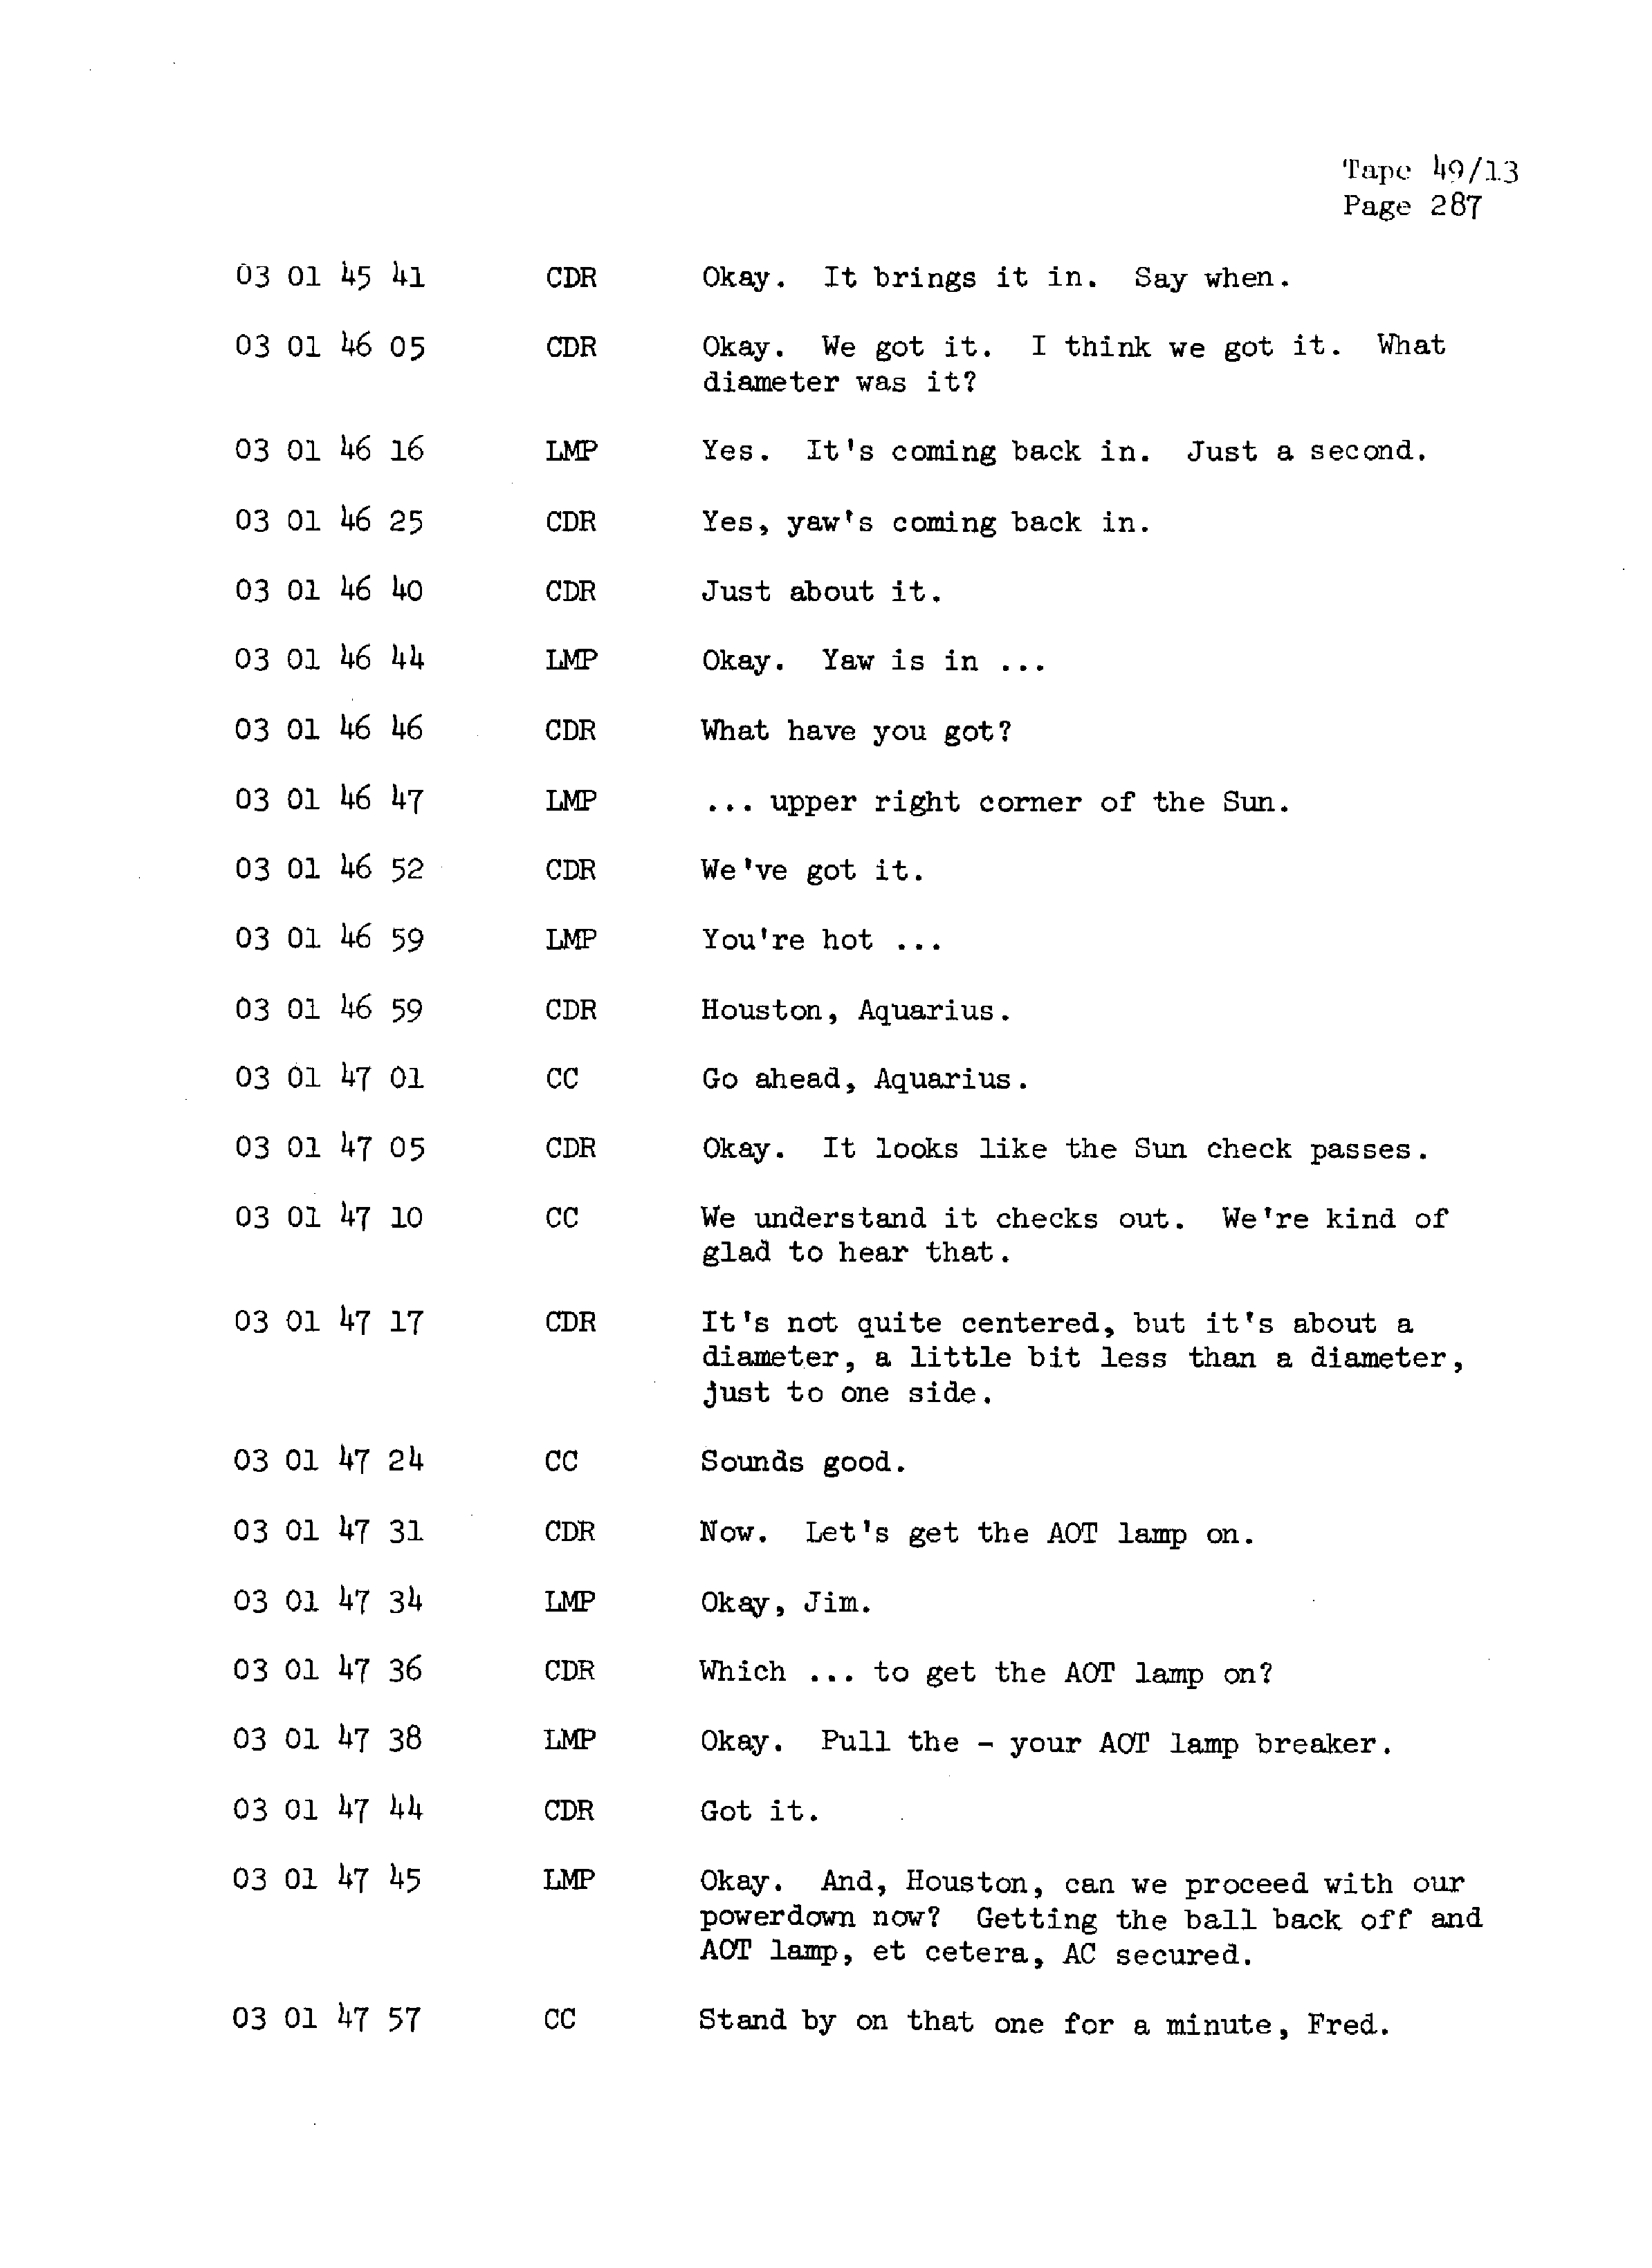 Page 294 of Apollo 13’s original transcript